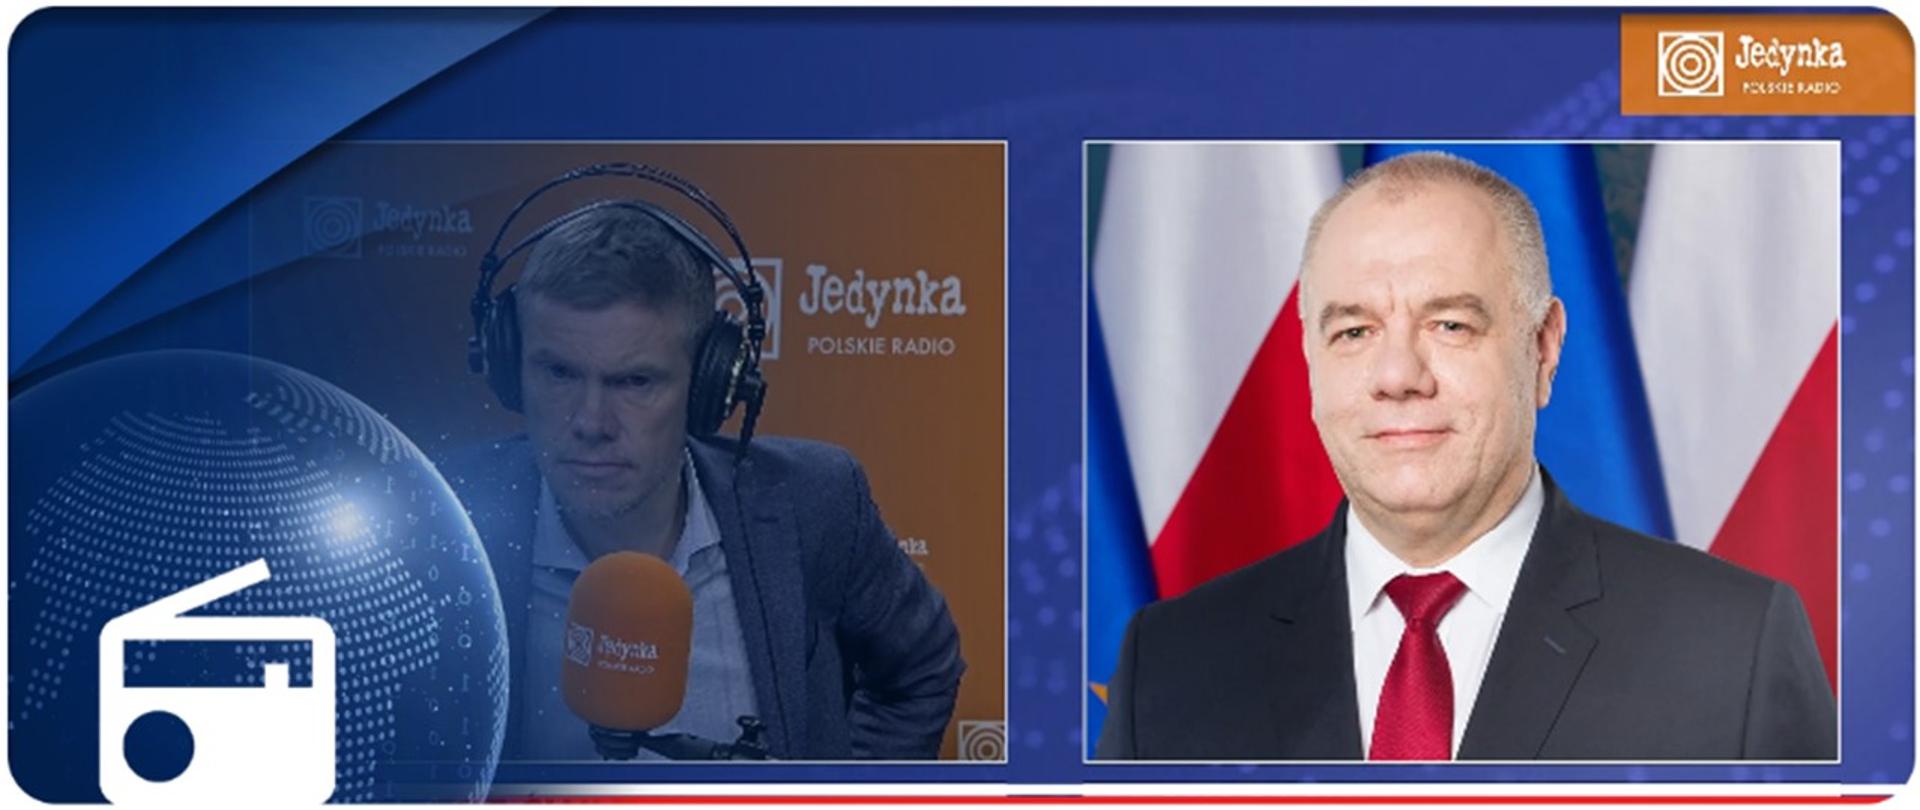 Grafika - z lewej strony redaktor Krzysztof Świątek, z prawej strony wicepremier Jacek Sasin. W lewym dolnym rogu ikonka radia. 